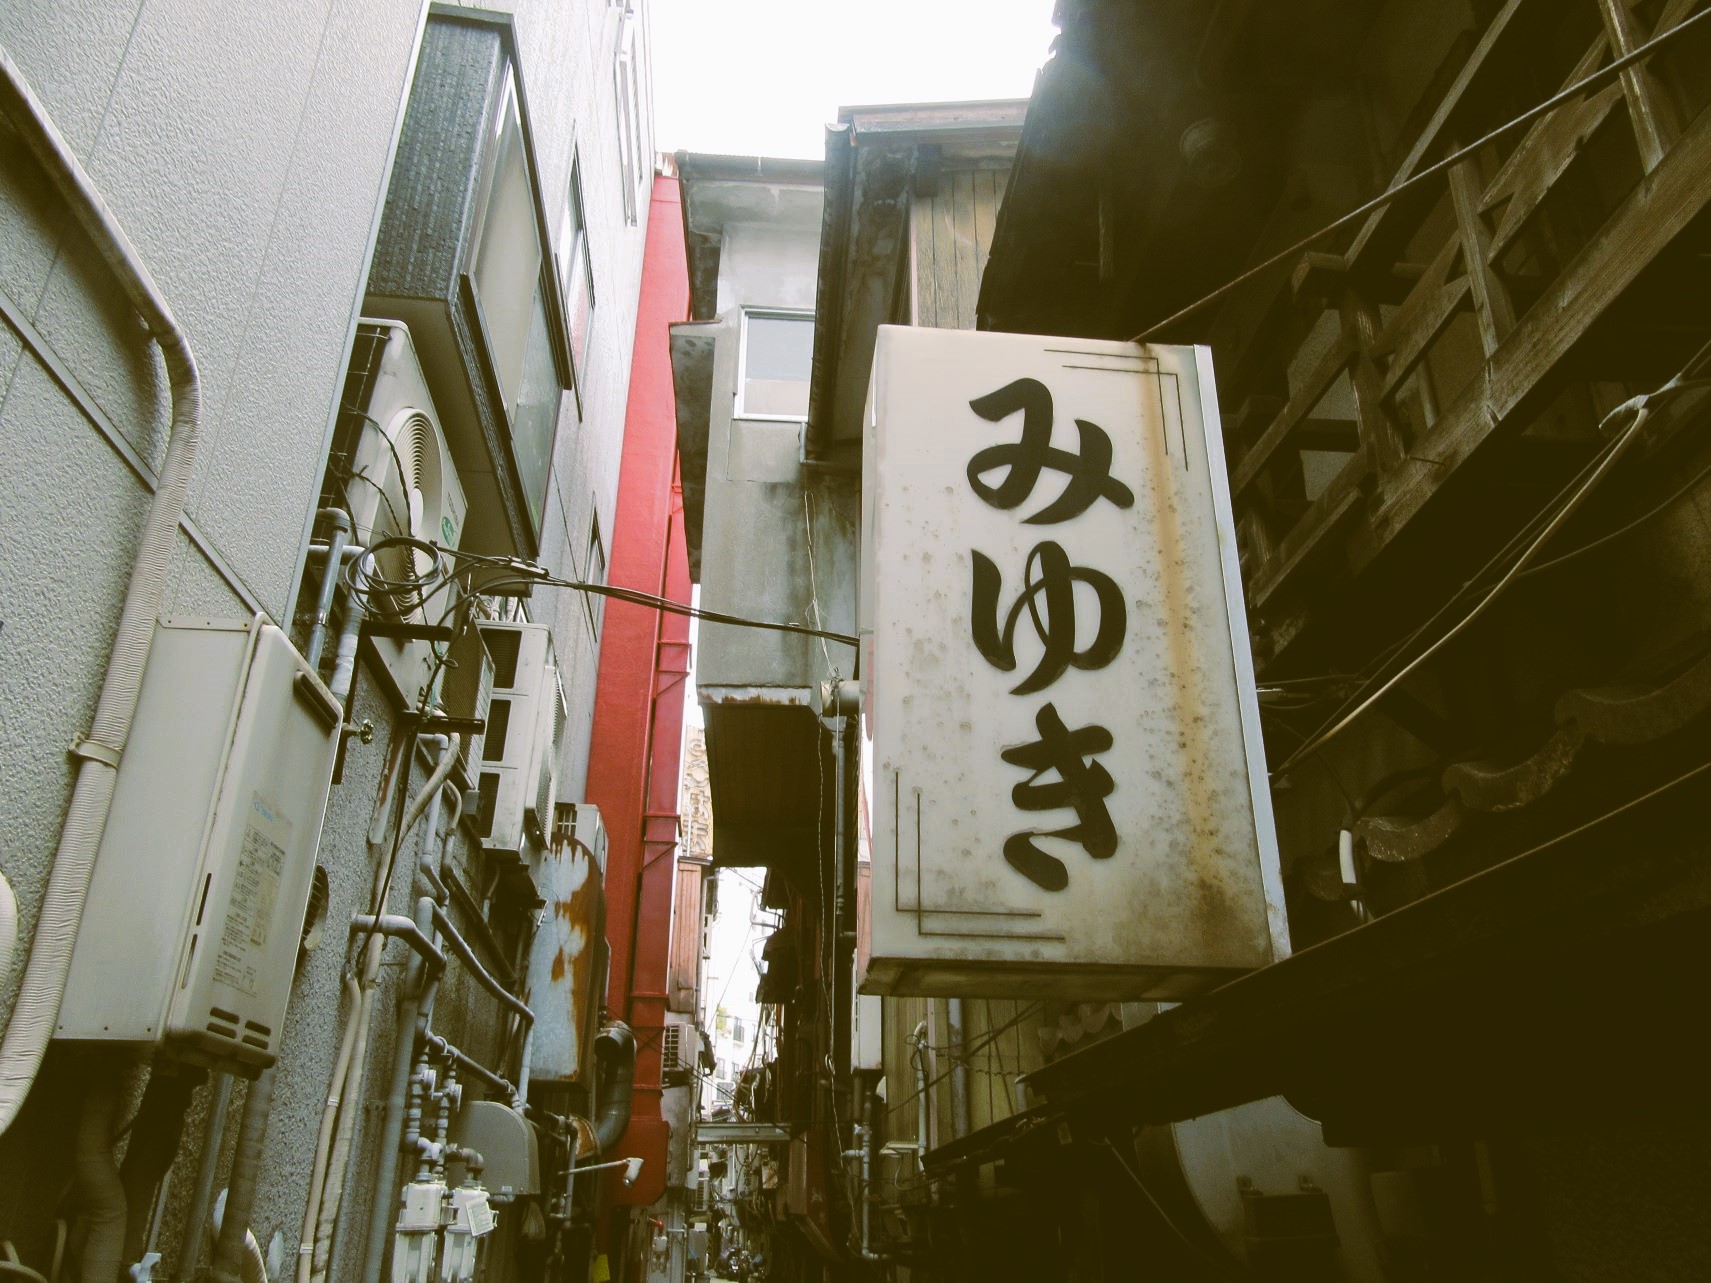 長崎市思案橋横丁裏路地の写真を、レトロに加工しました。